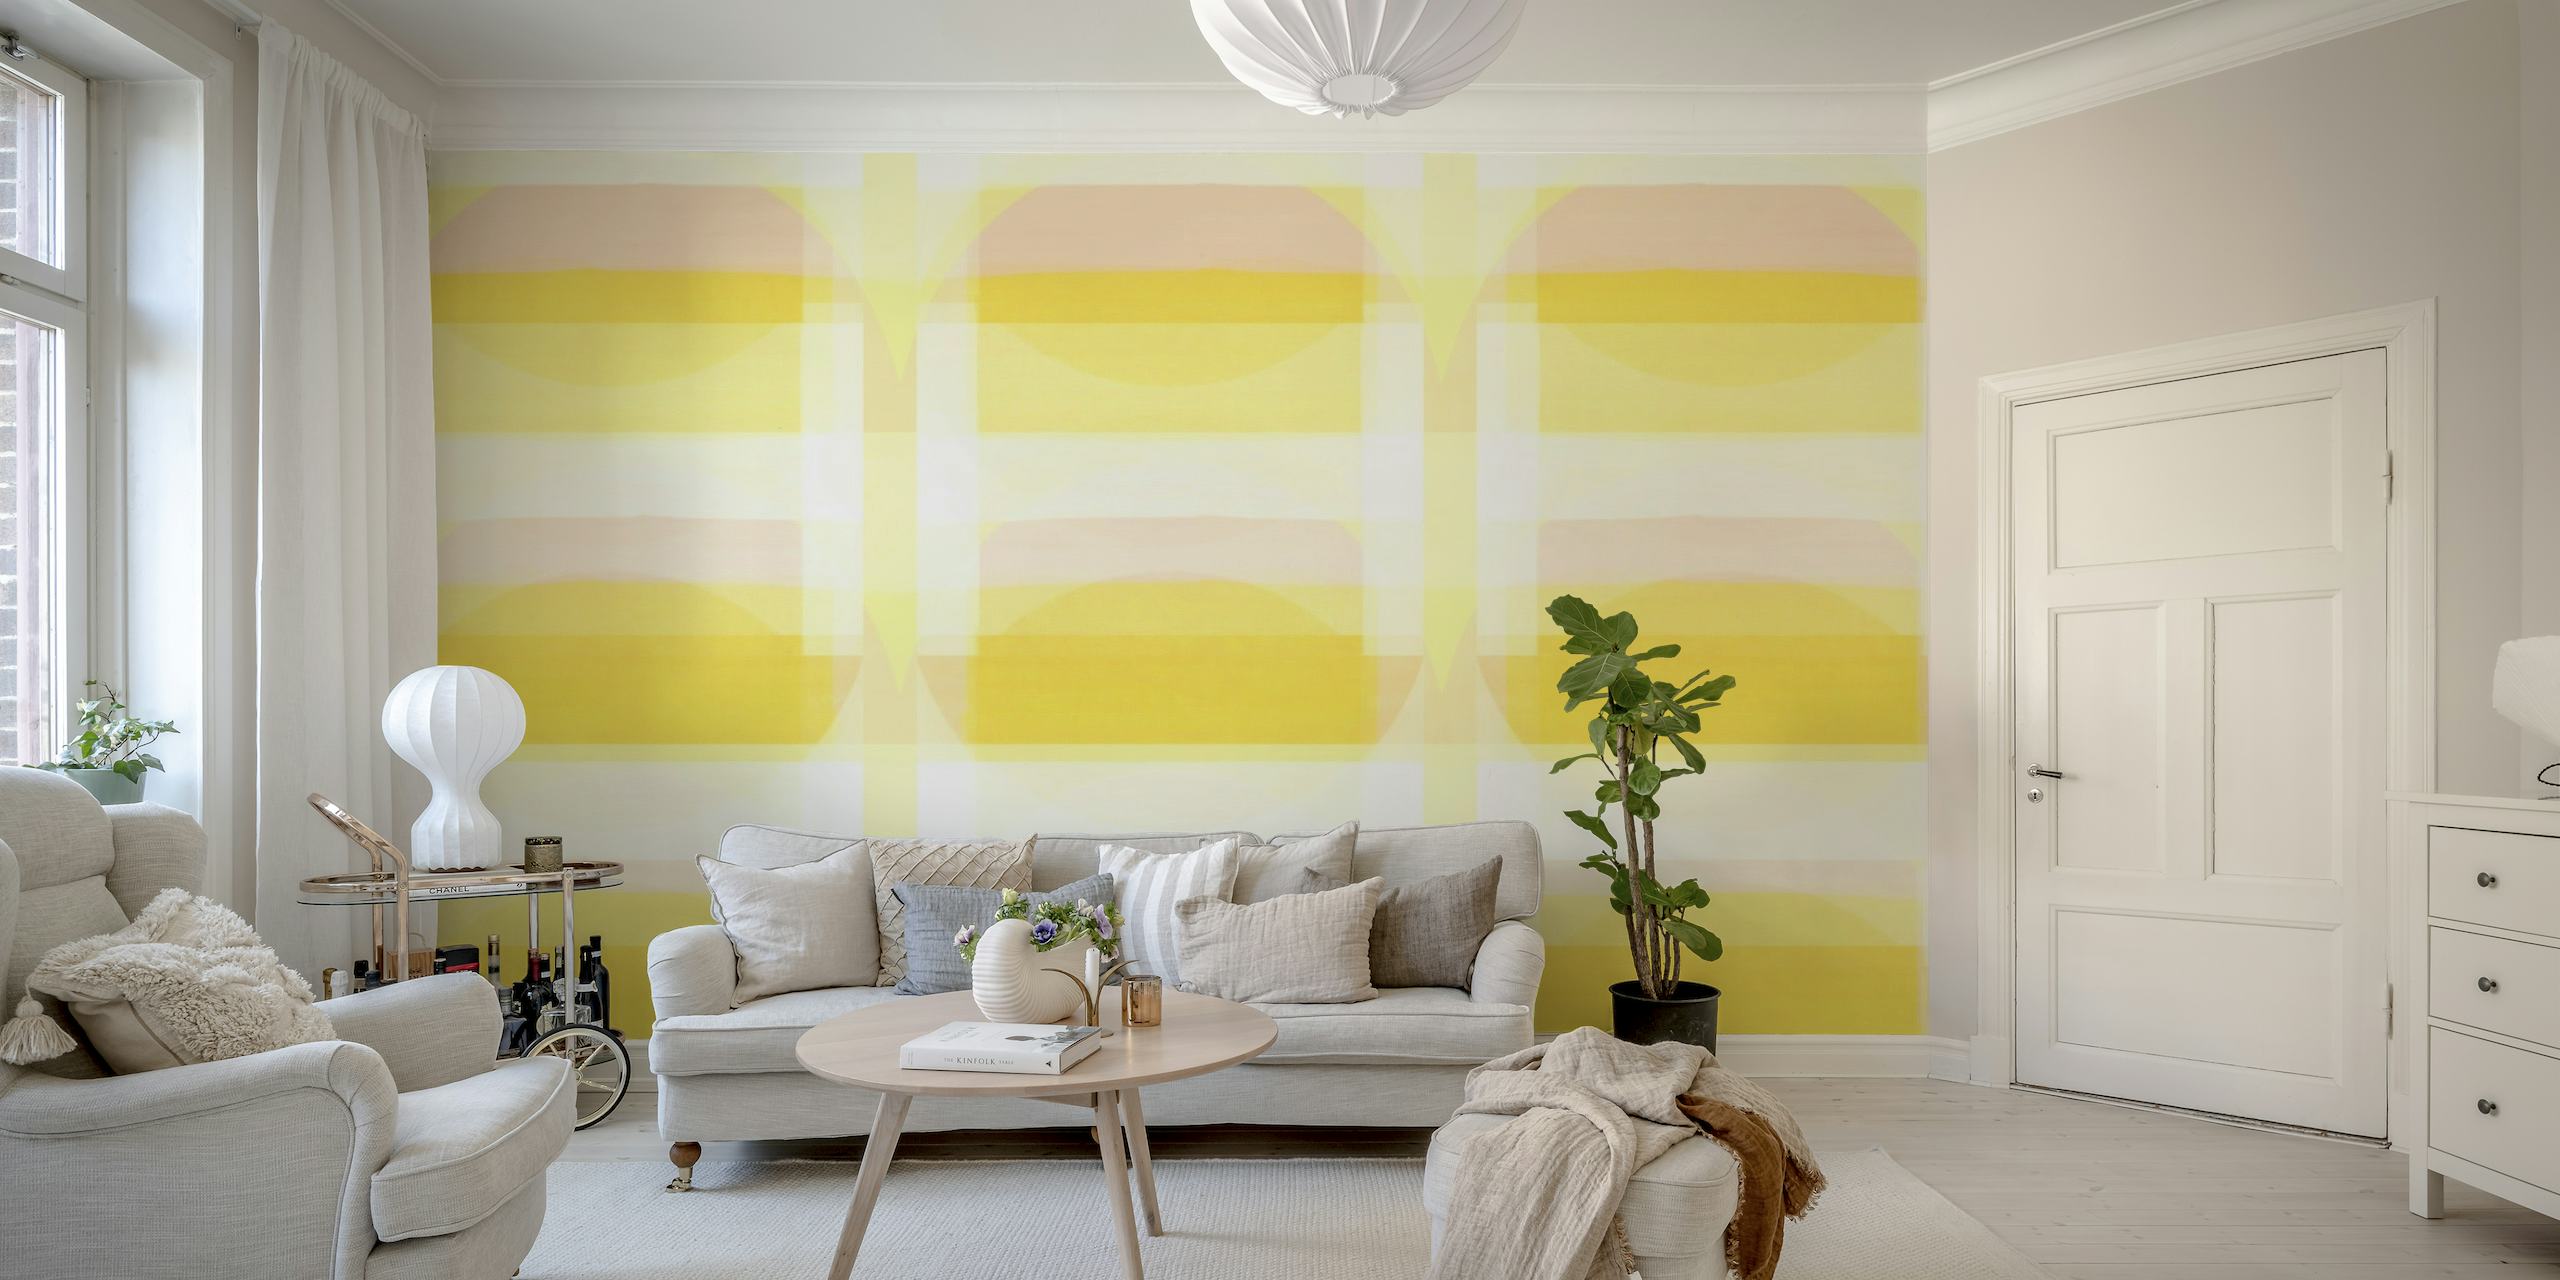 Fotomural vinílico de parede com padrão geométrico Sunny Bauhaus em amarelo pastel e branco